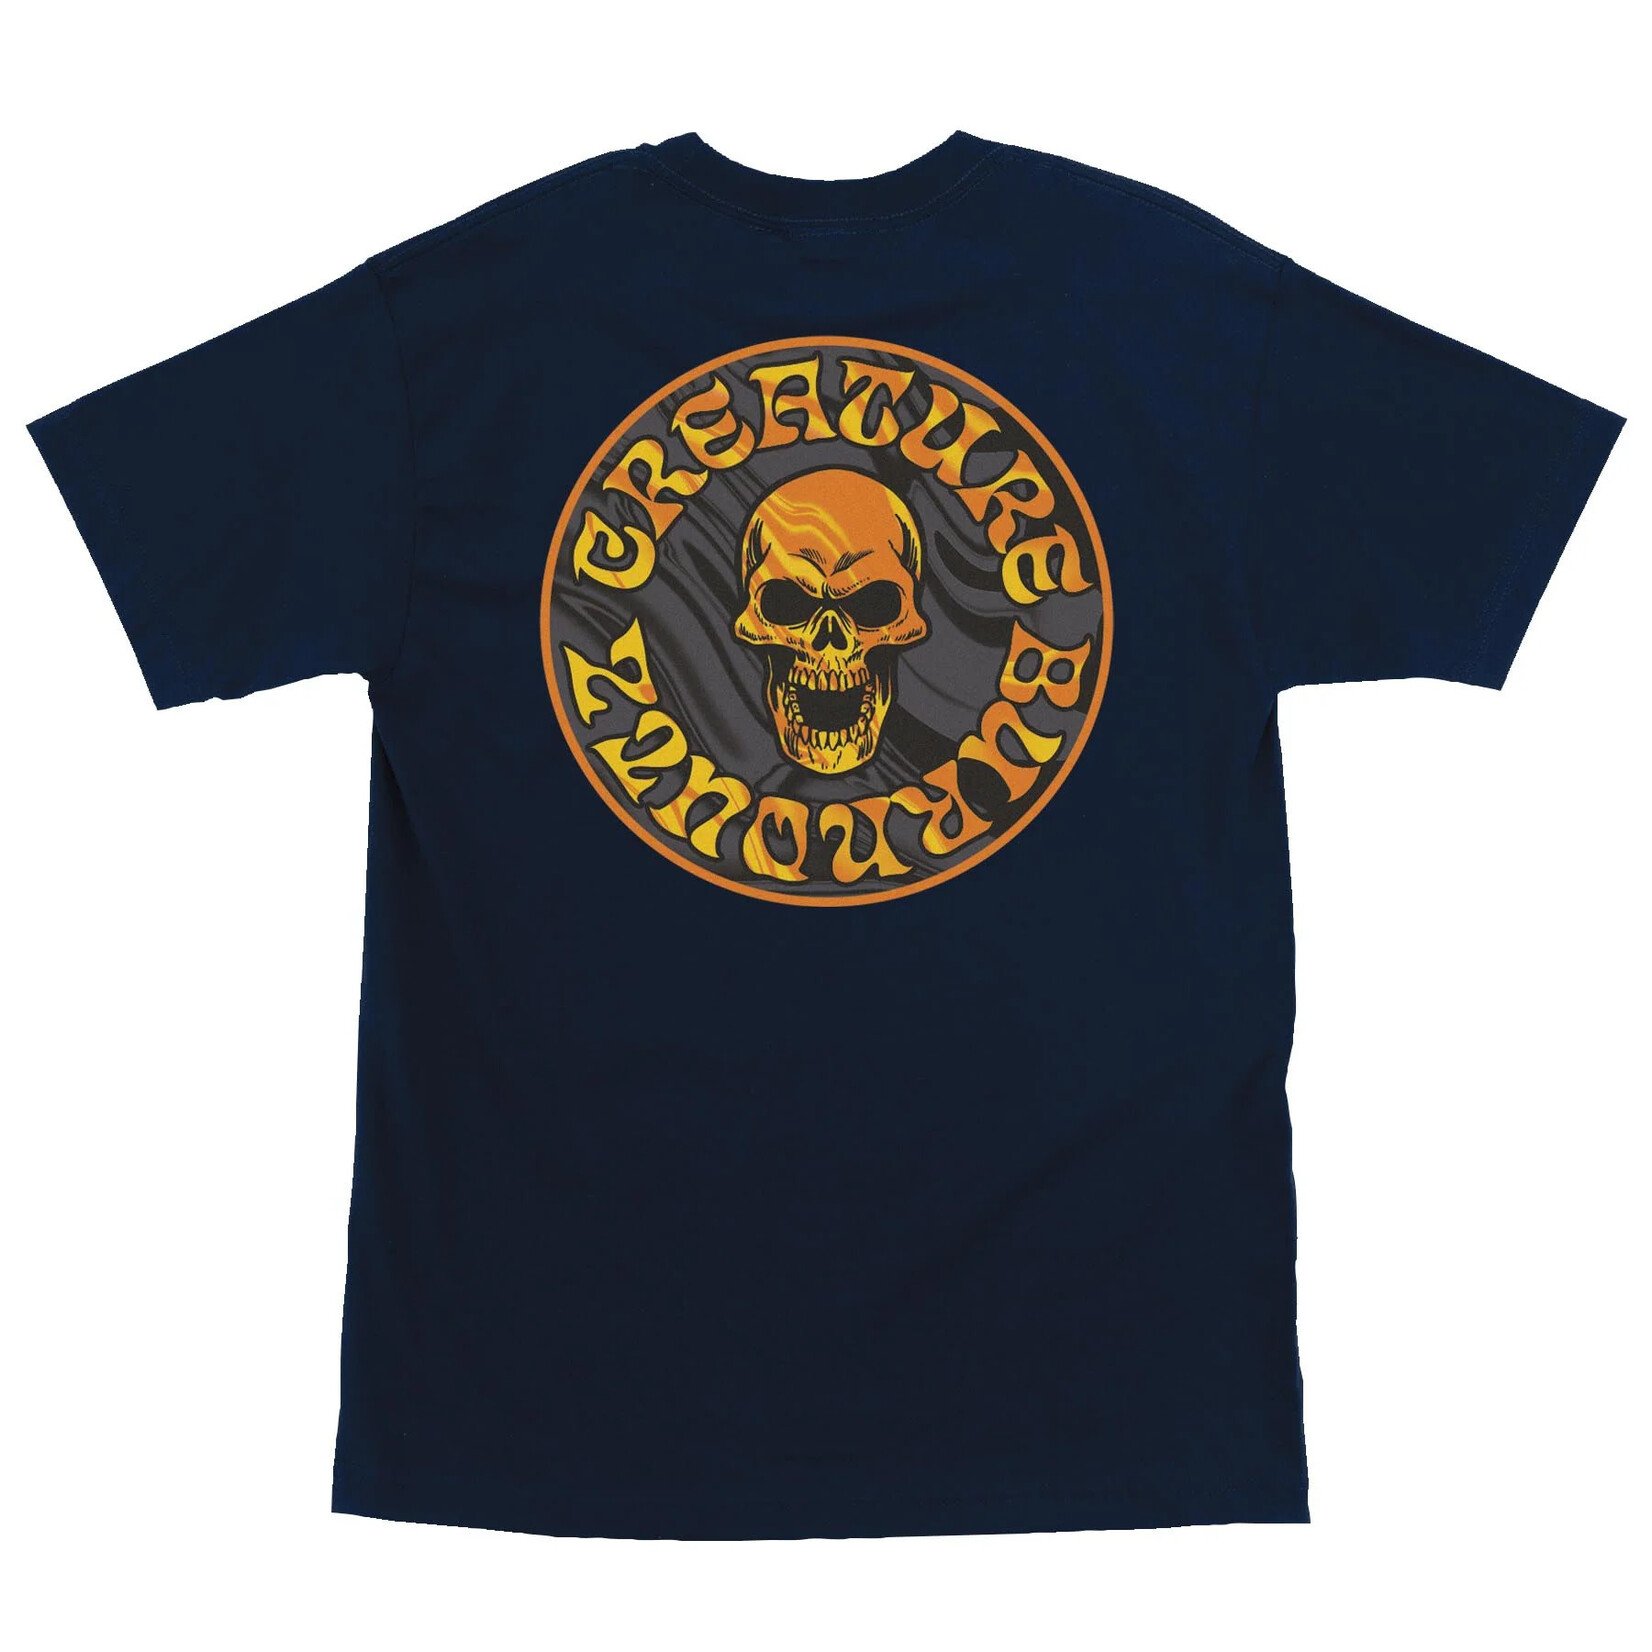 Creature Creature Burnoutz Patch T-Shirt - Navy